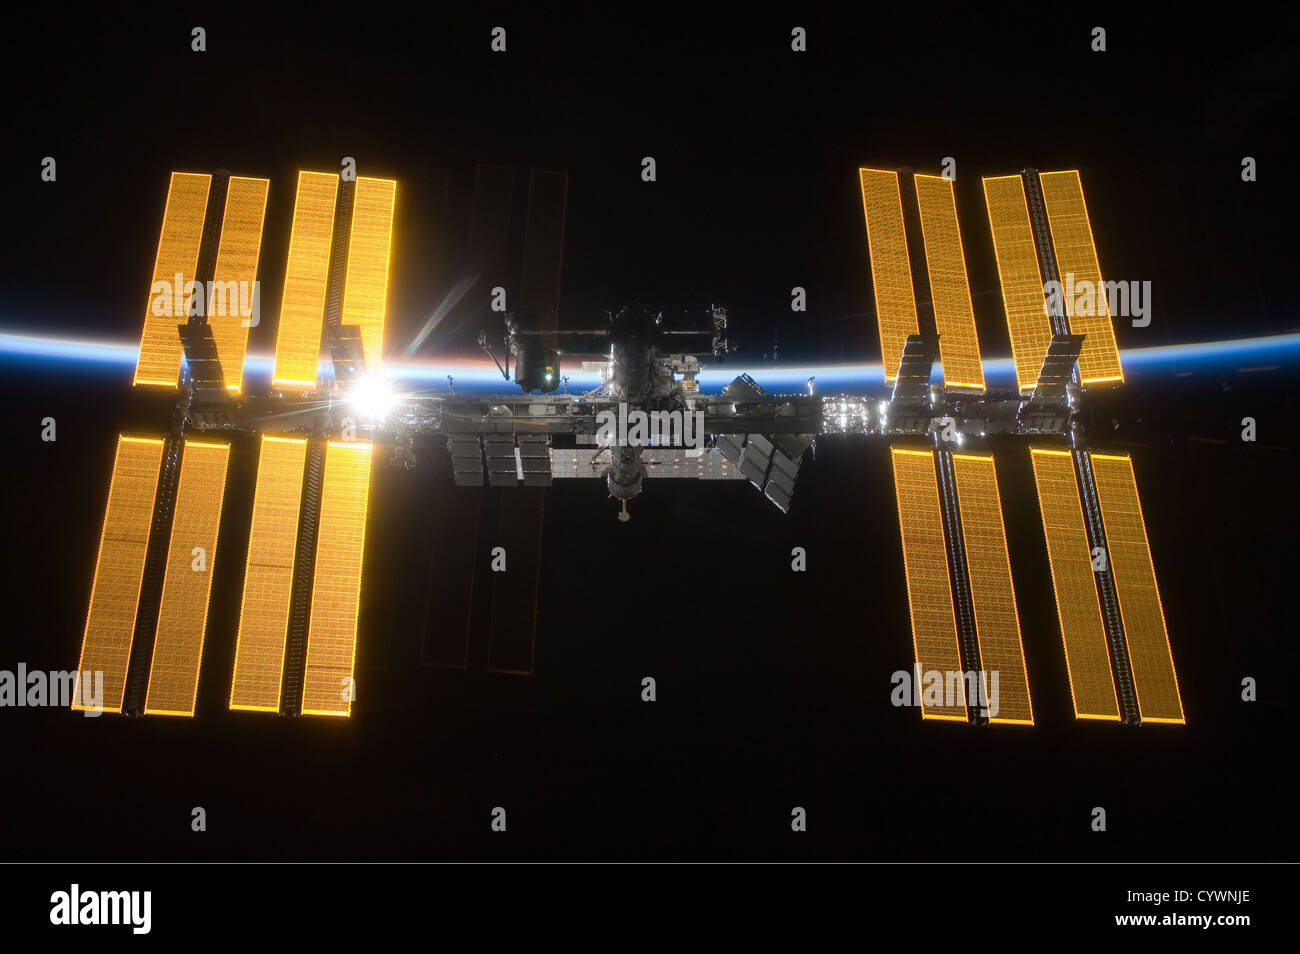 L'amélioration de l'image de l'ordinateur de la NASA La Station spatiale internationale (ISS), volant au-dessus de la terre Banque D'Images